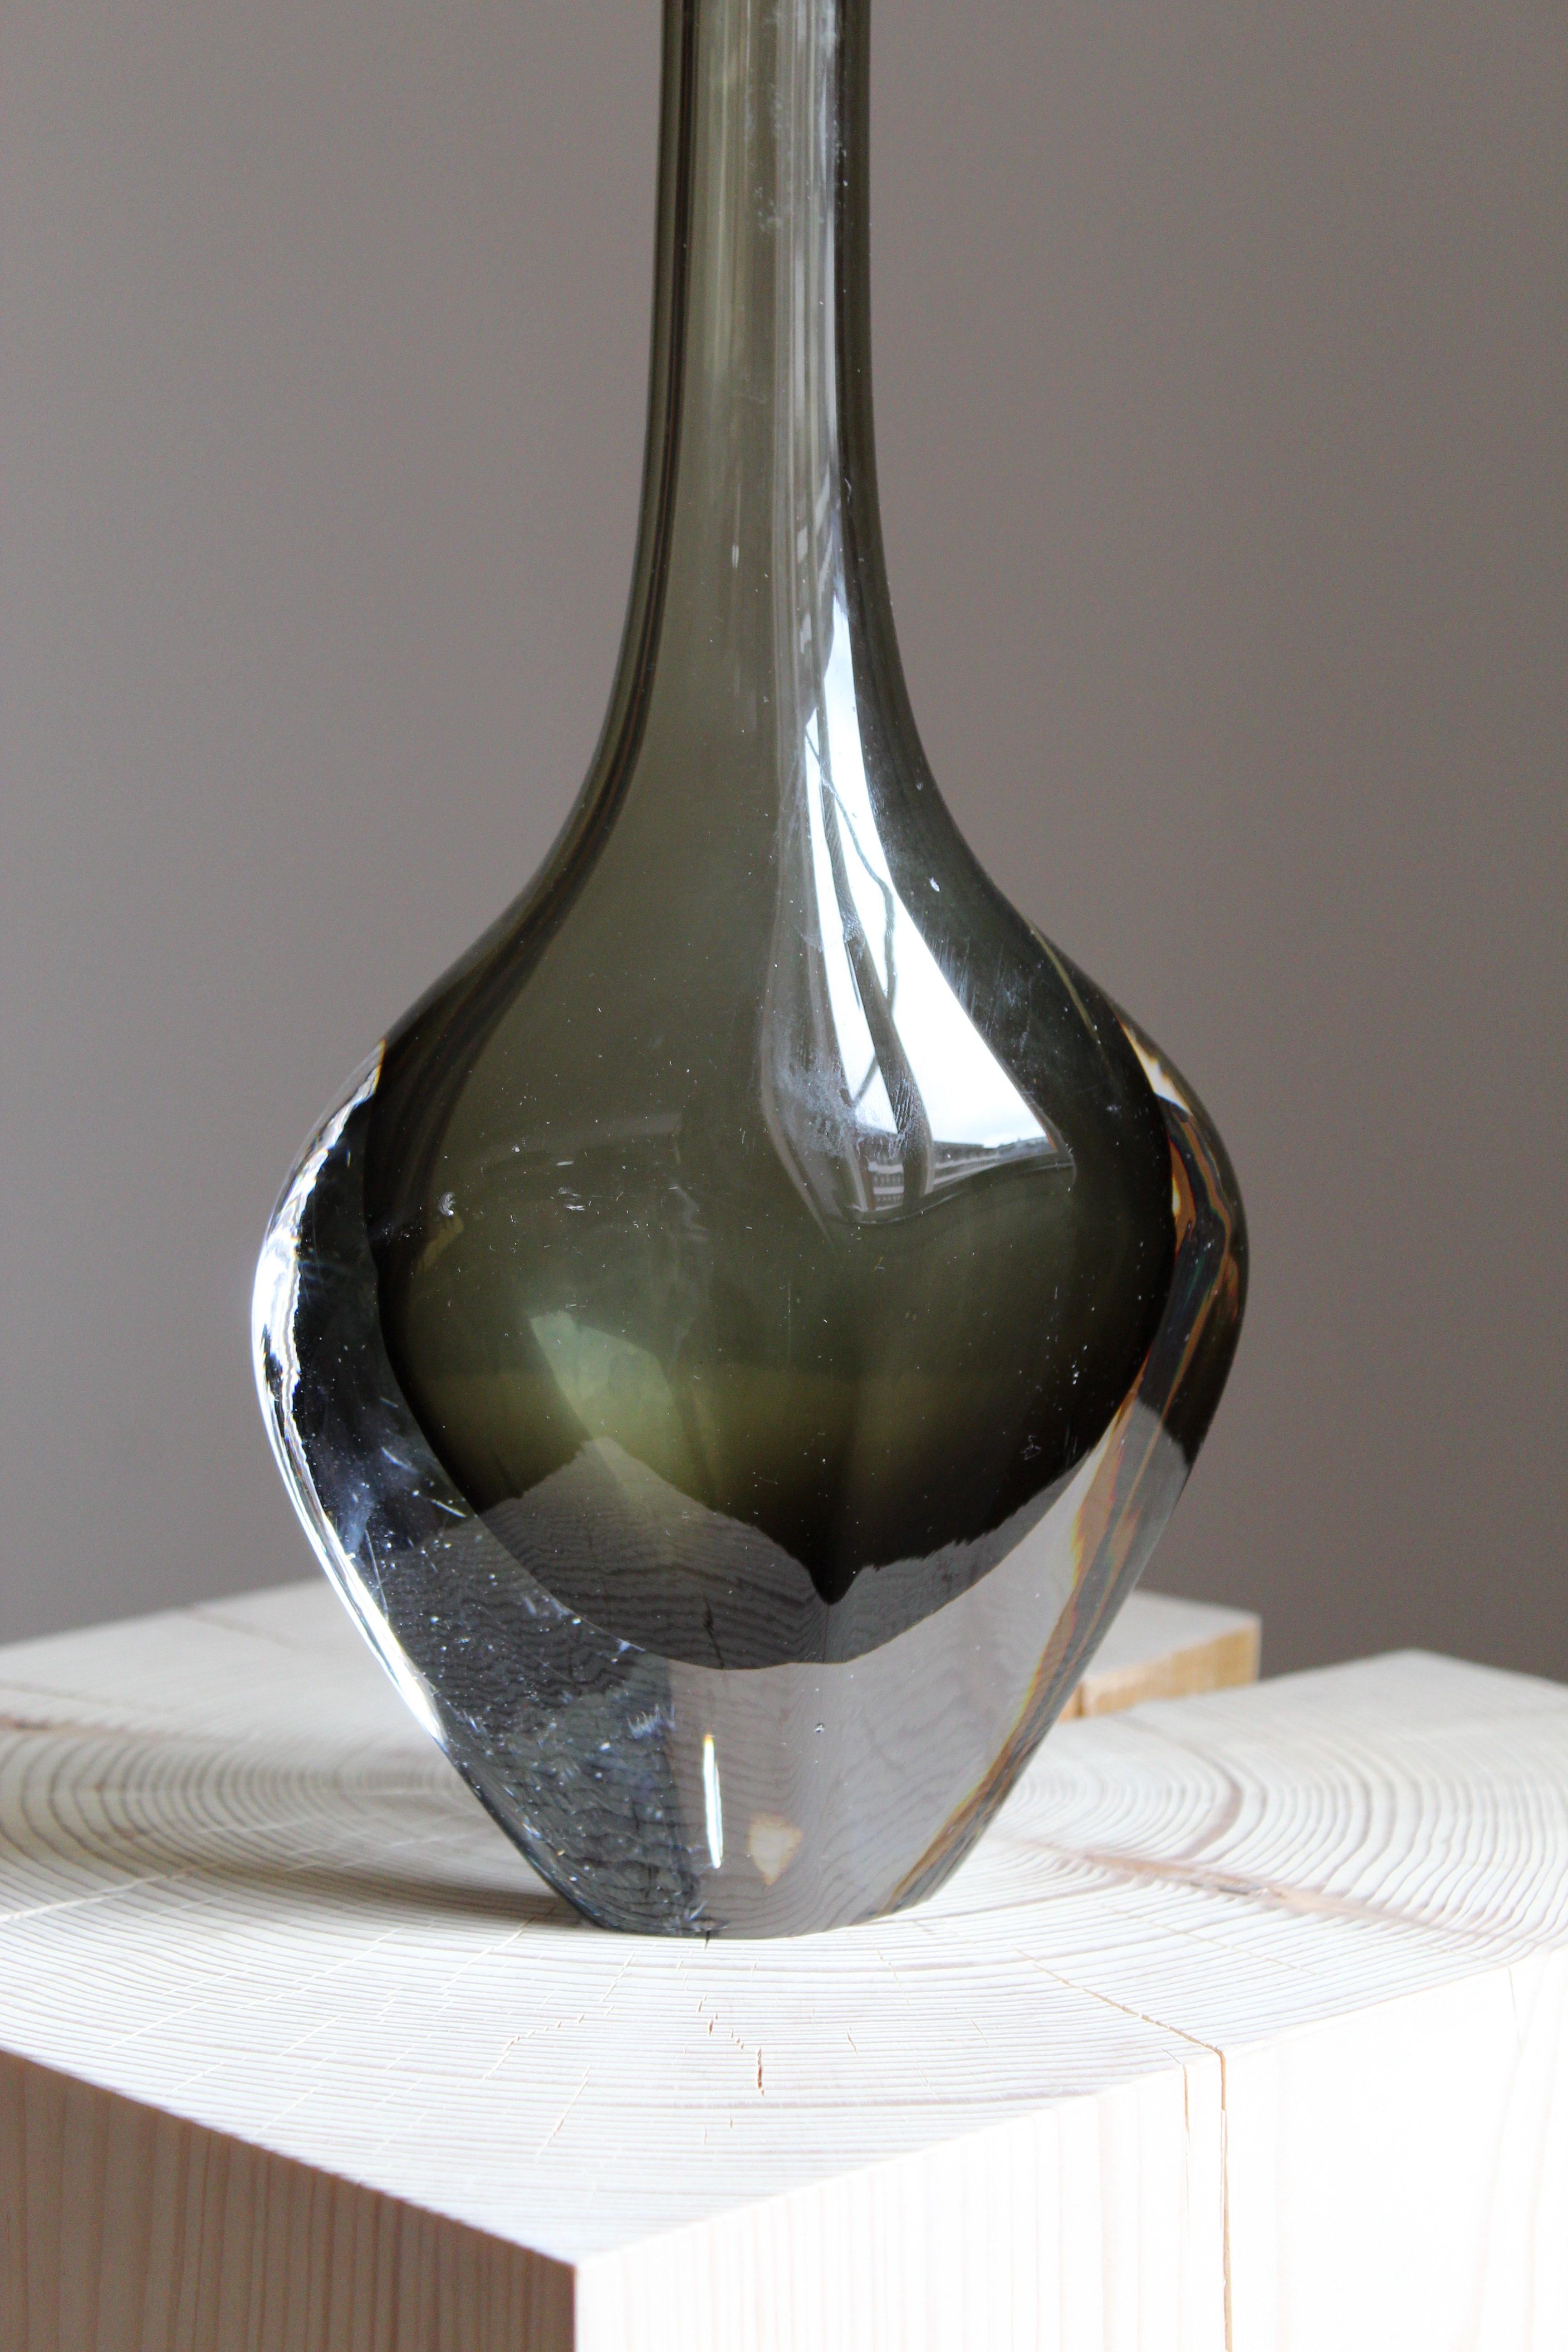 Swedish Nils Landberg, Organic Vase, Blown Glass in Sommerso Technique, Orrefors, 1950s